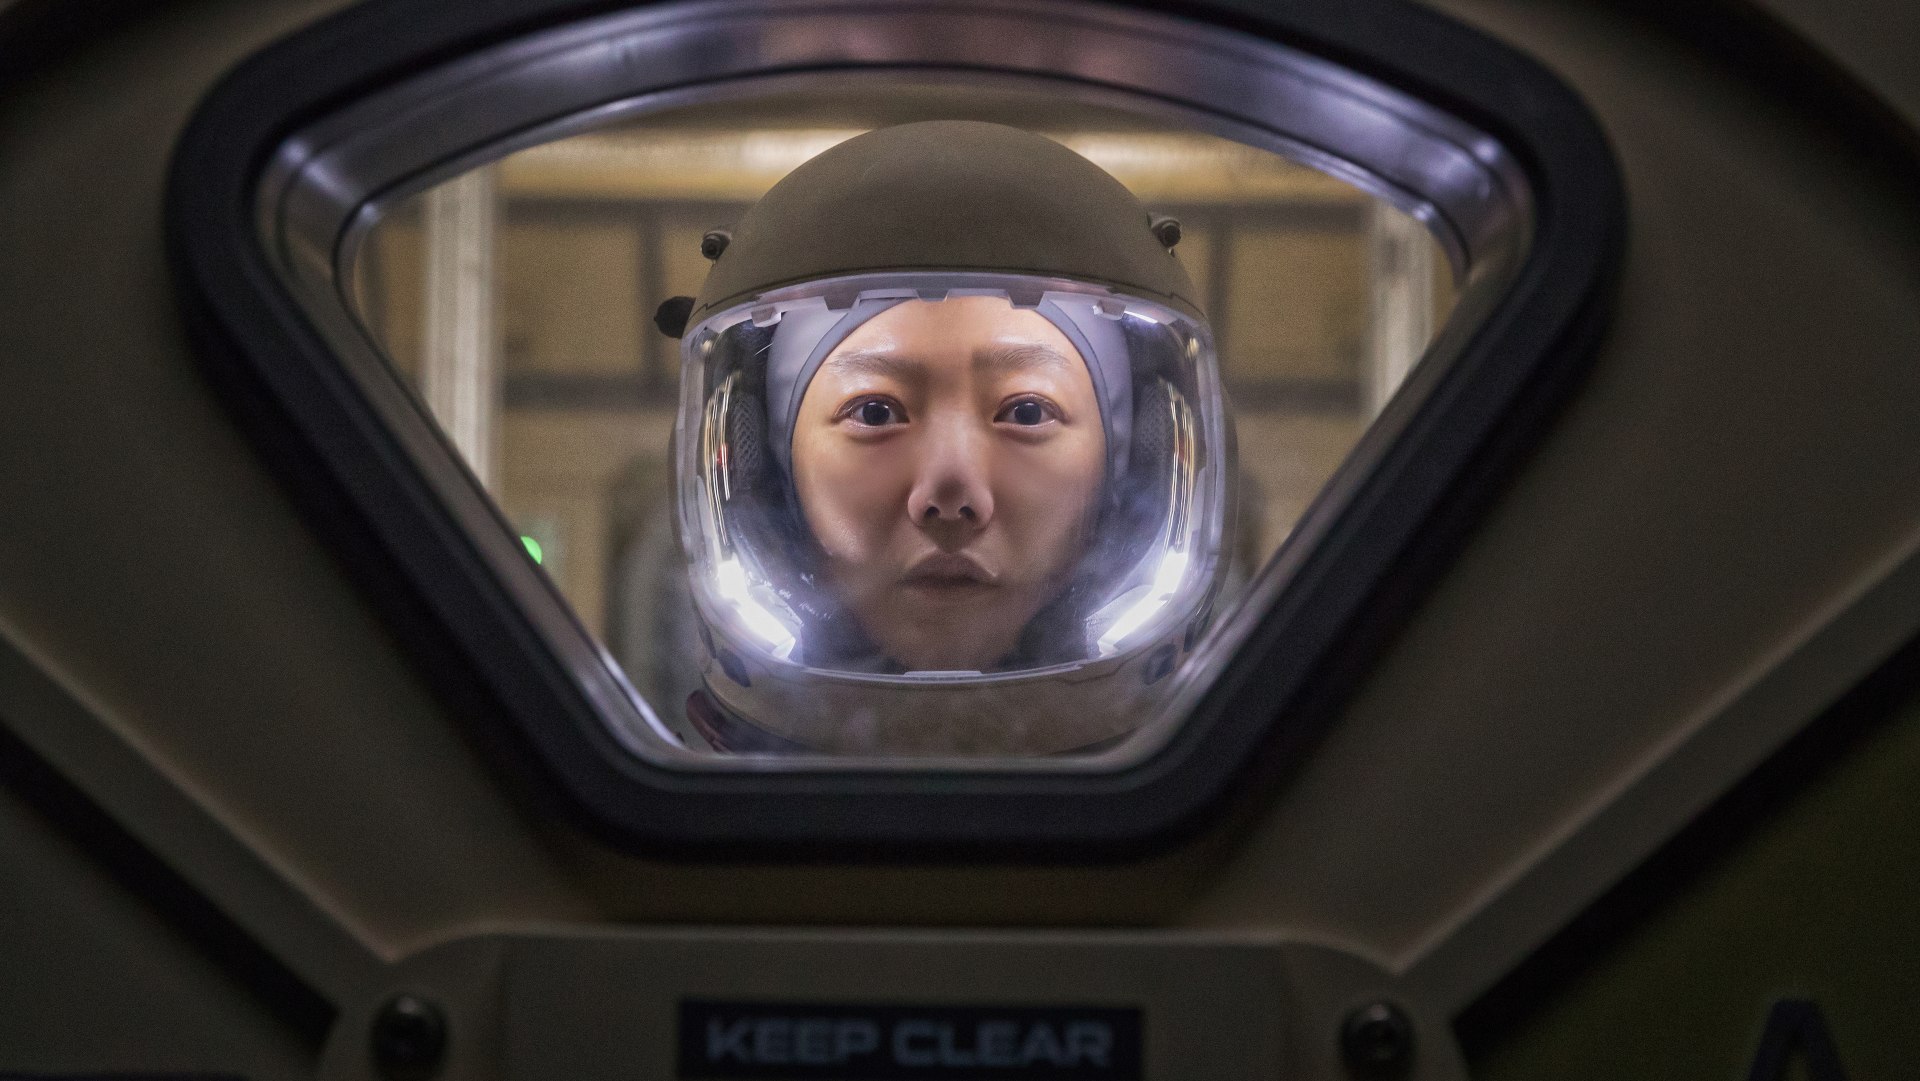 نتفلیکس اولین تریلر از سریال تریلر رازآلود و علمی تخیلی جدید خود به نام The Silent Sea را منتشر کرده که یکی دیگر از سریال های کره ای